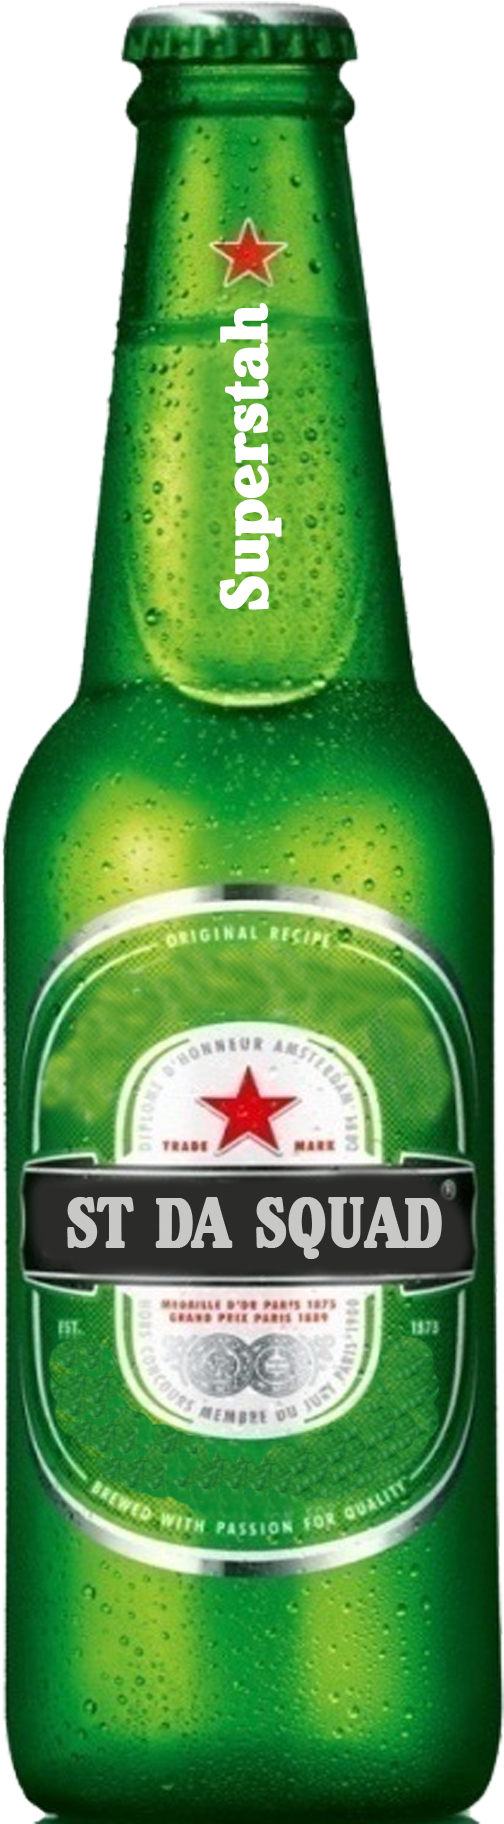 Beer Bottle Png Image - Beer Bottle Png (1275x1875)